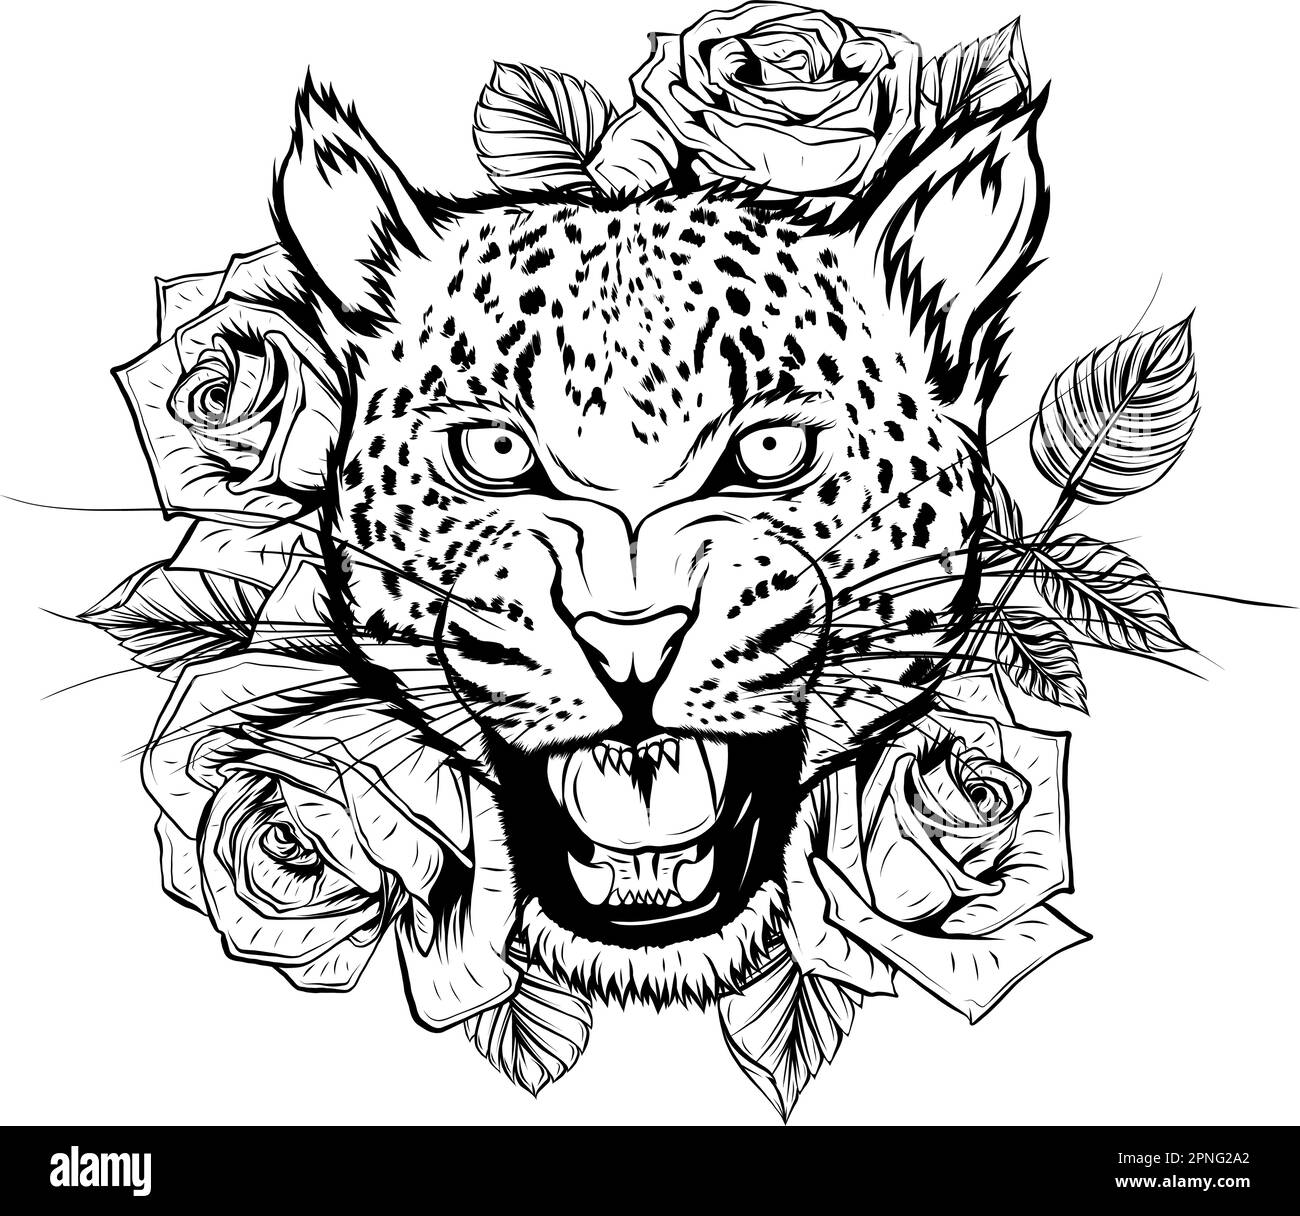 Leopardenkopf. Strichgrafiken. Vektor-isolierte Darstellung auf Weiß. Handgezeichnete Skizze. Schwarzweiß. Stock Vektor